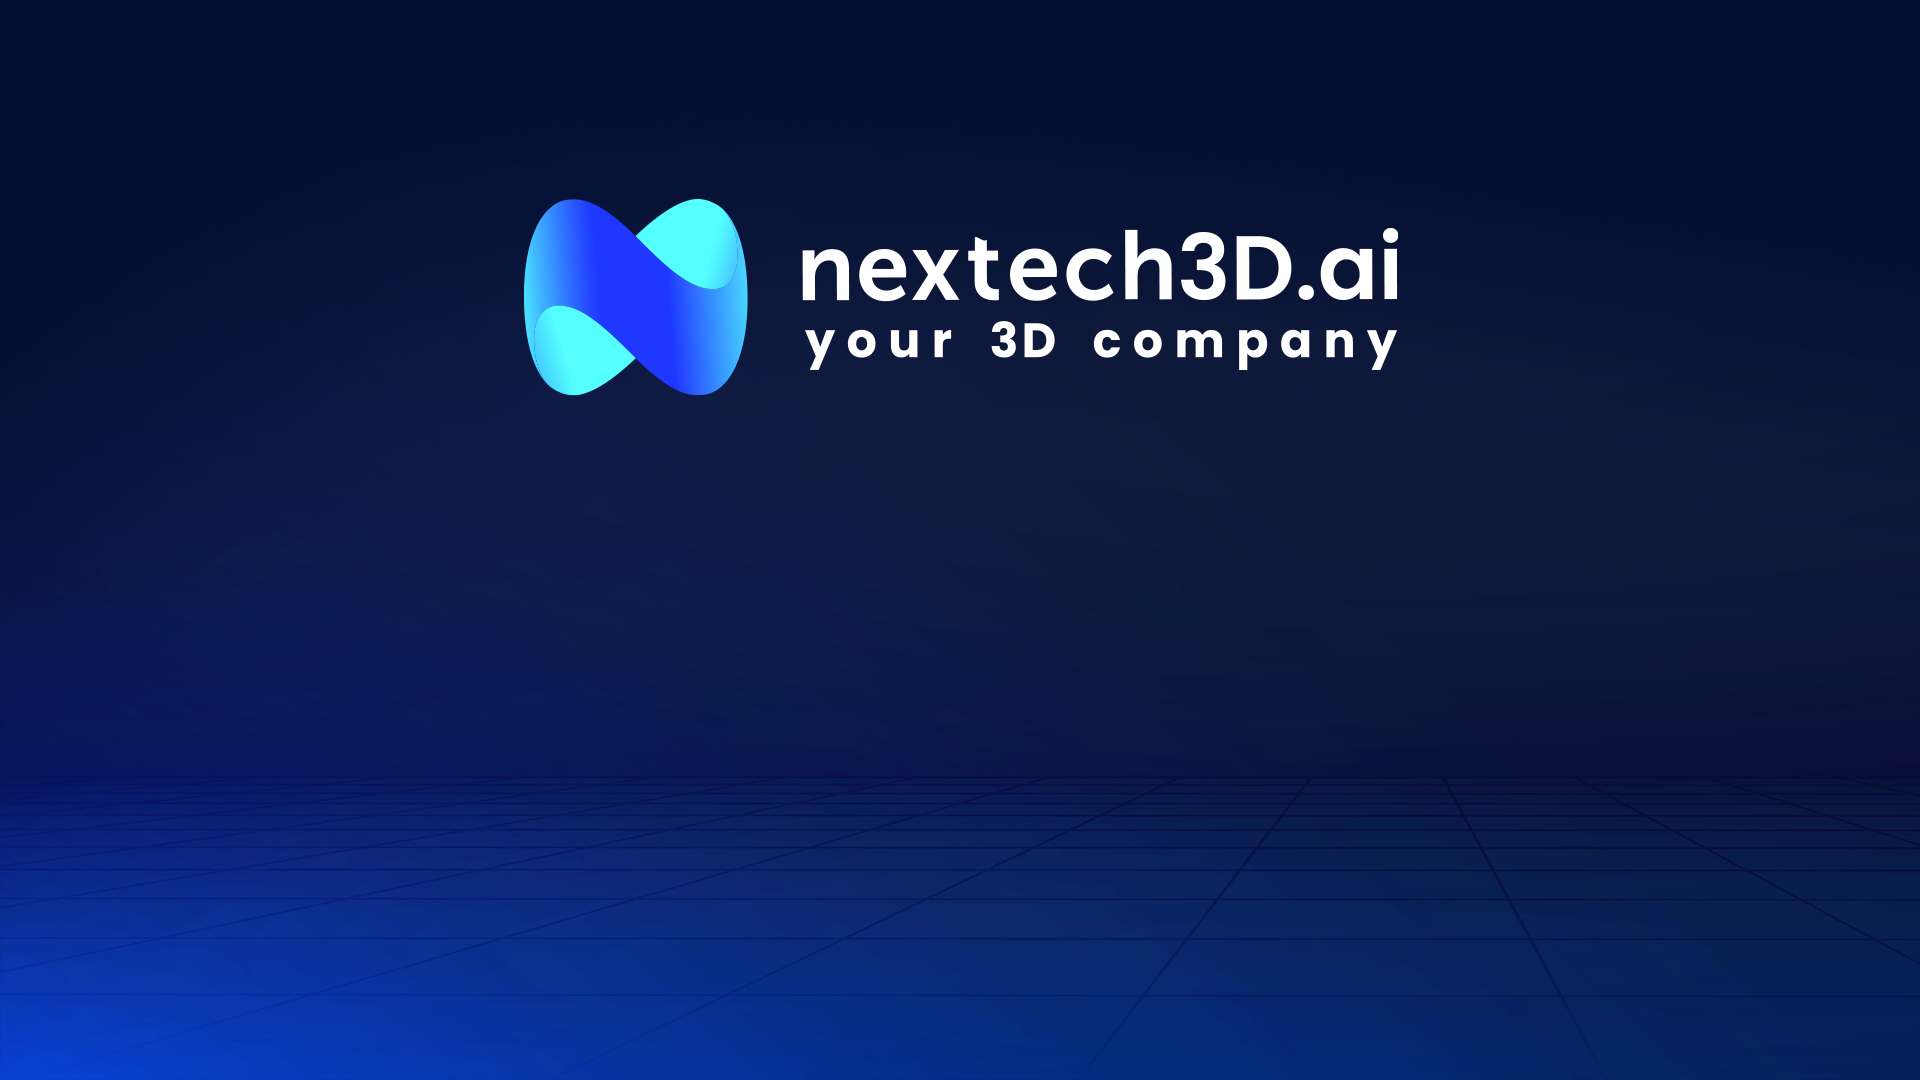 Nextech3D.ai's 3D model photo rendering